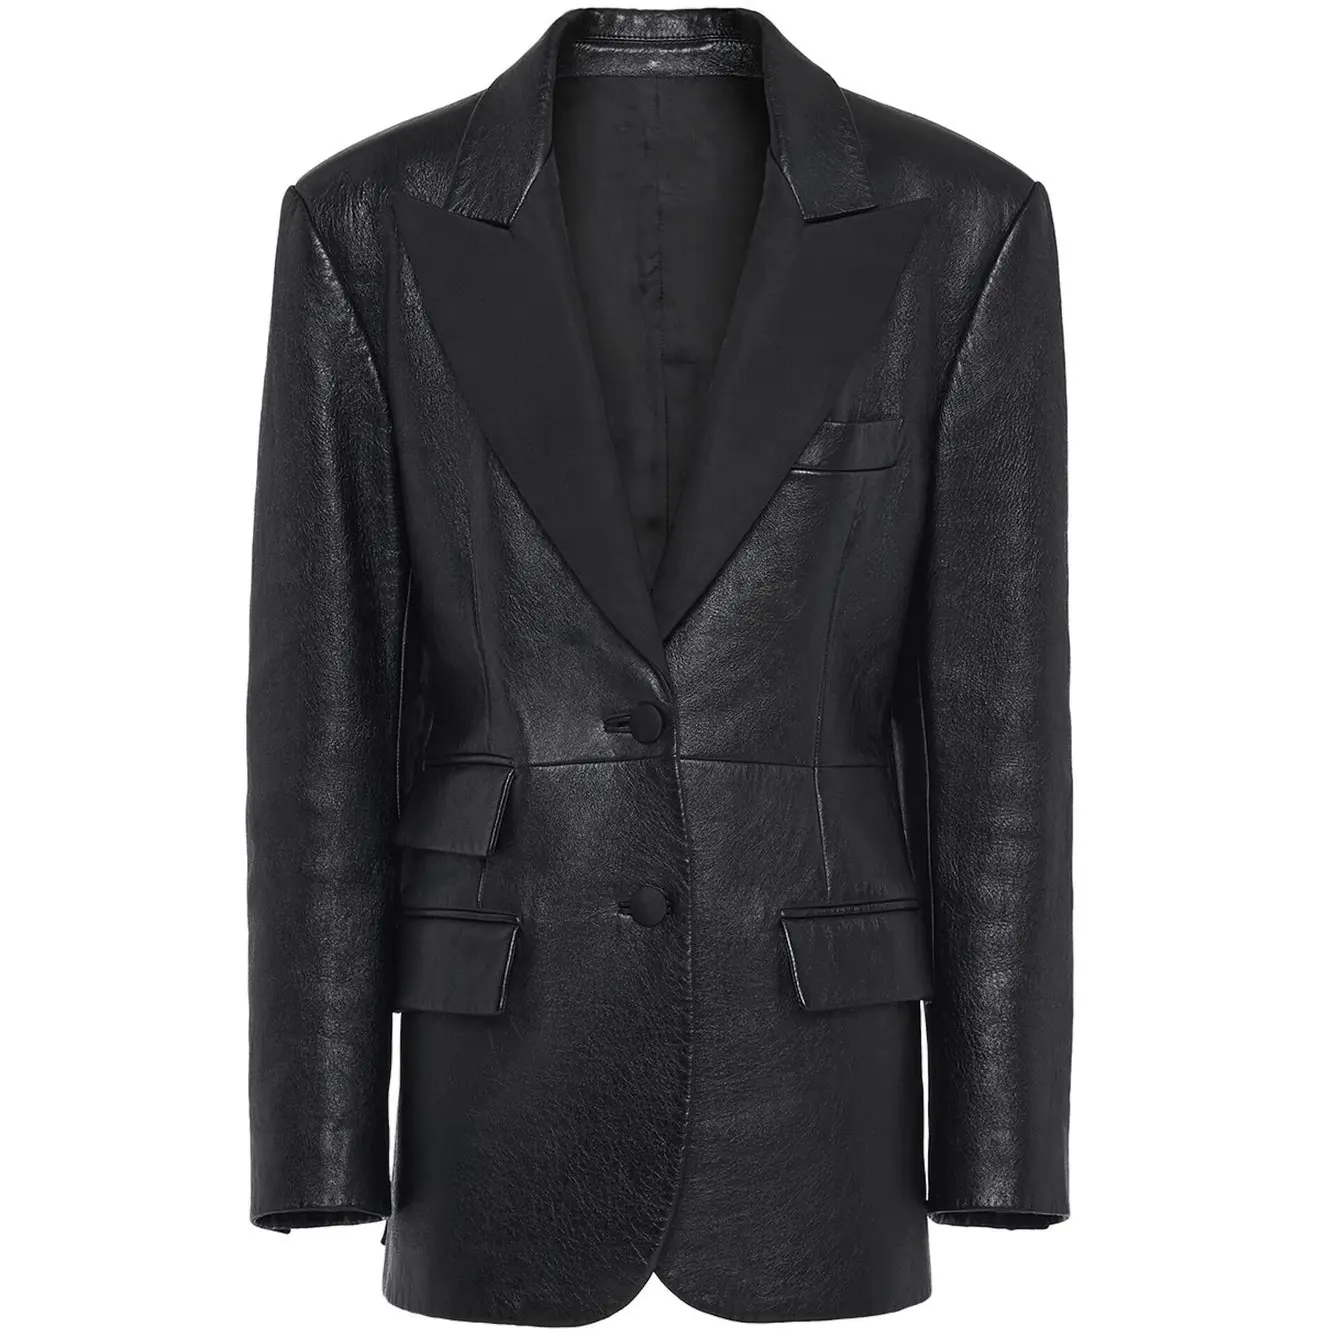 custom fashion black leather jacket in 2022 women's sweater